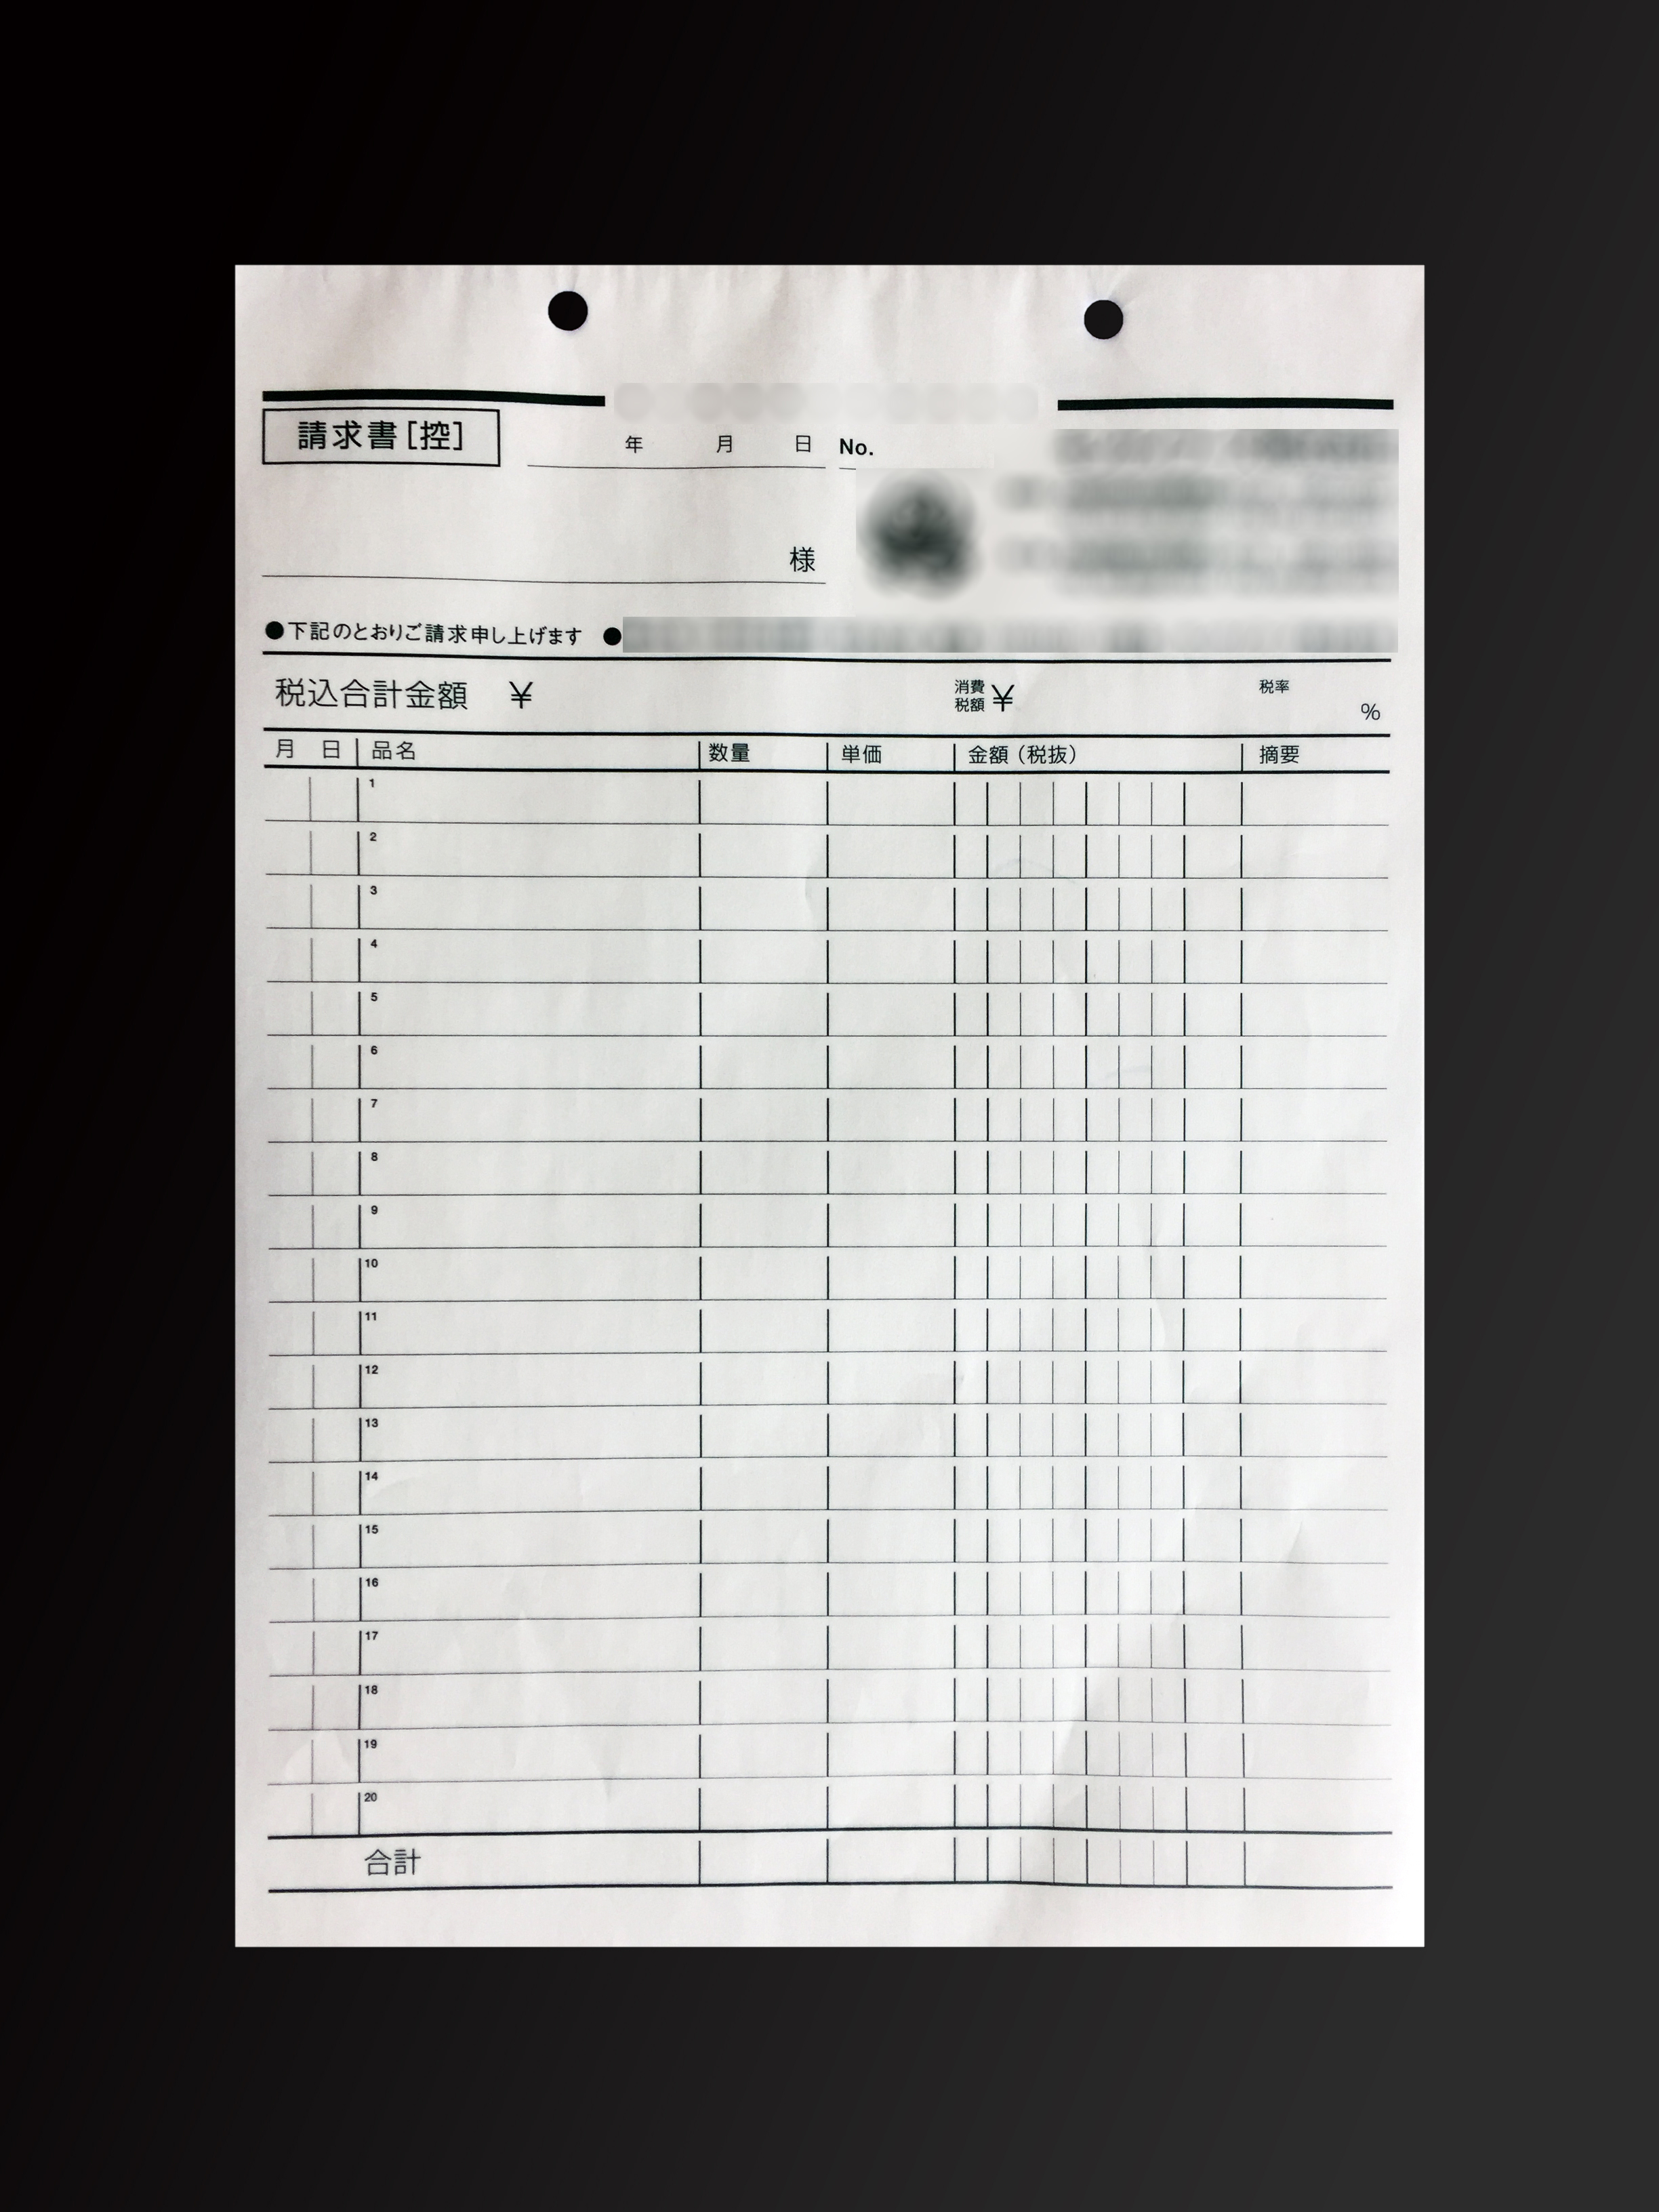 食品加工業で使用する請求書(3枚複写)の伝票作成実績